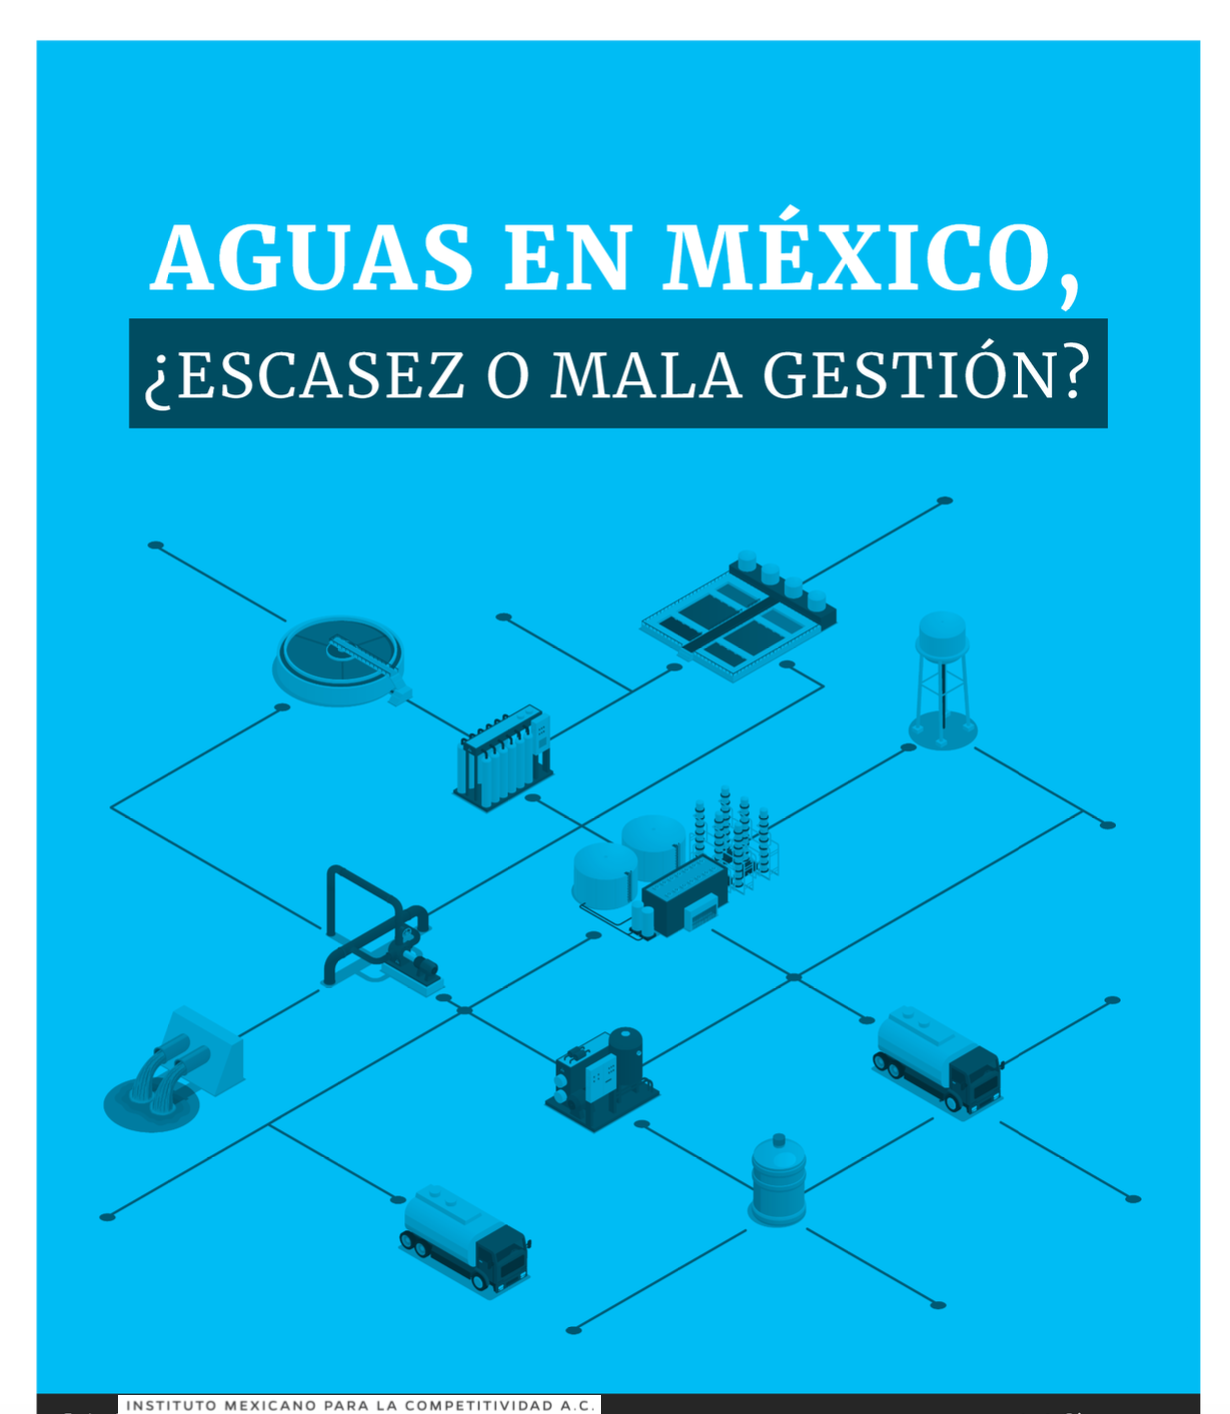 Aguas en México, ¿Escasez o mala gestión? (IMCO)